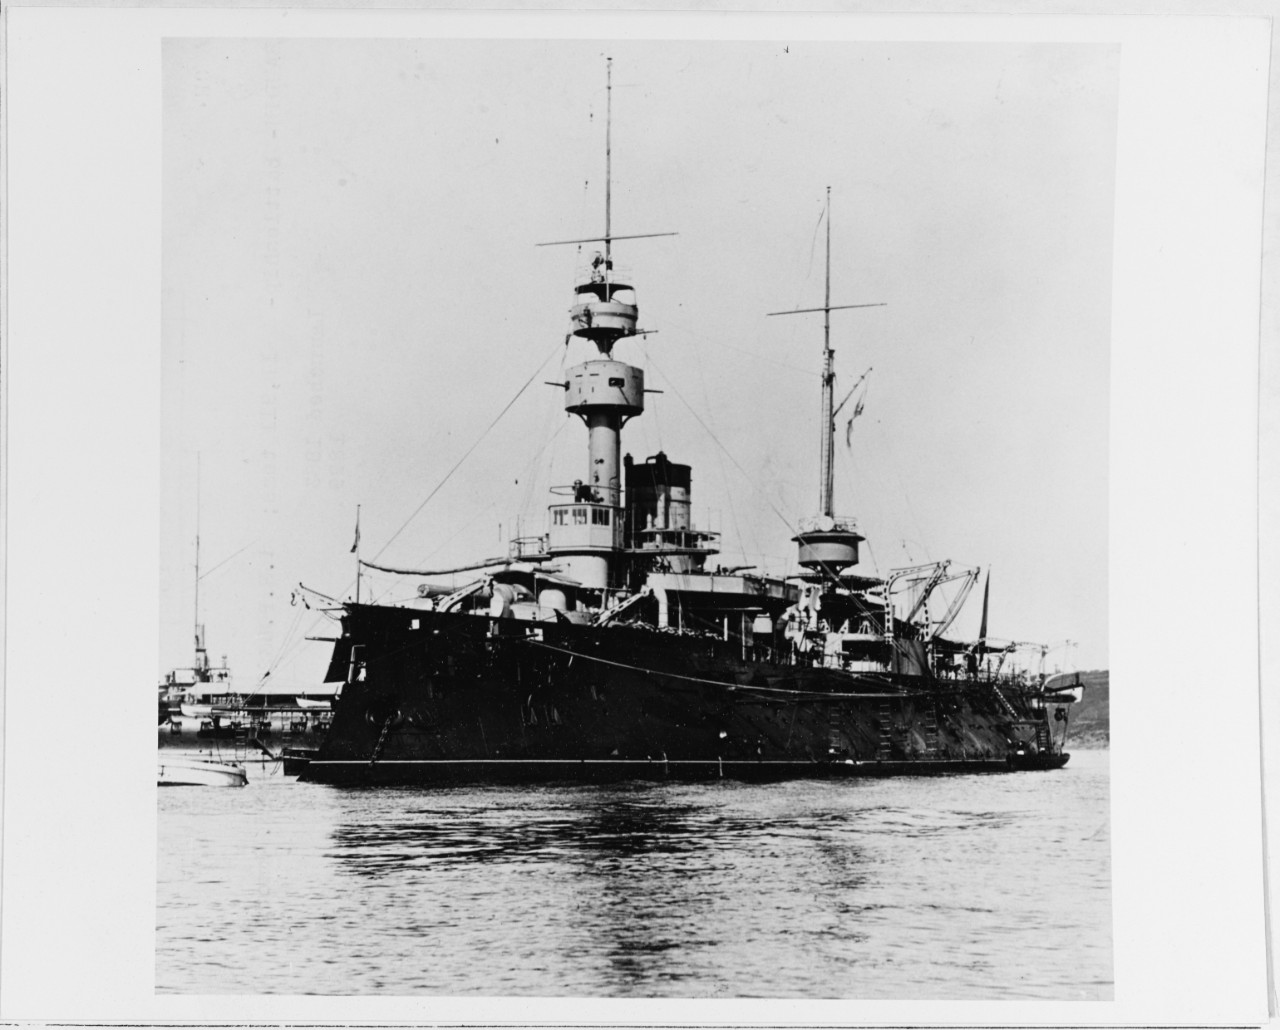 AMIRAL-BAUDIN (French battleship, 1883)